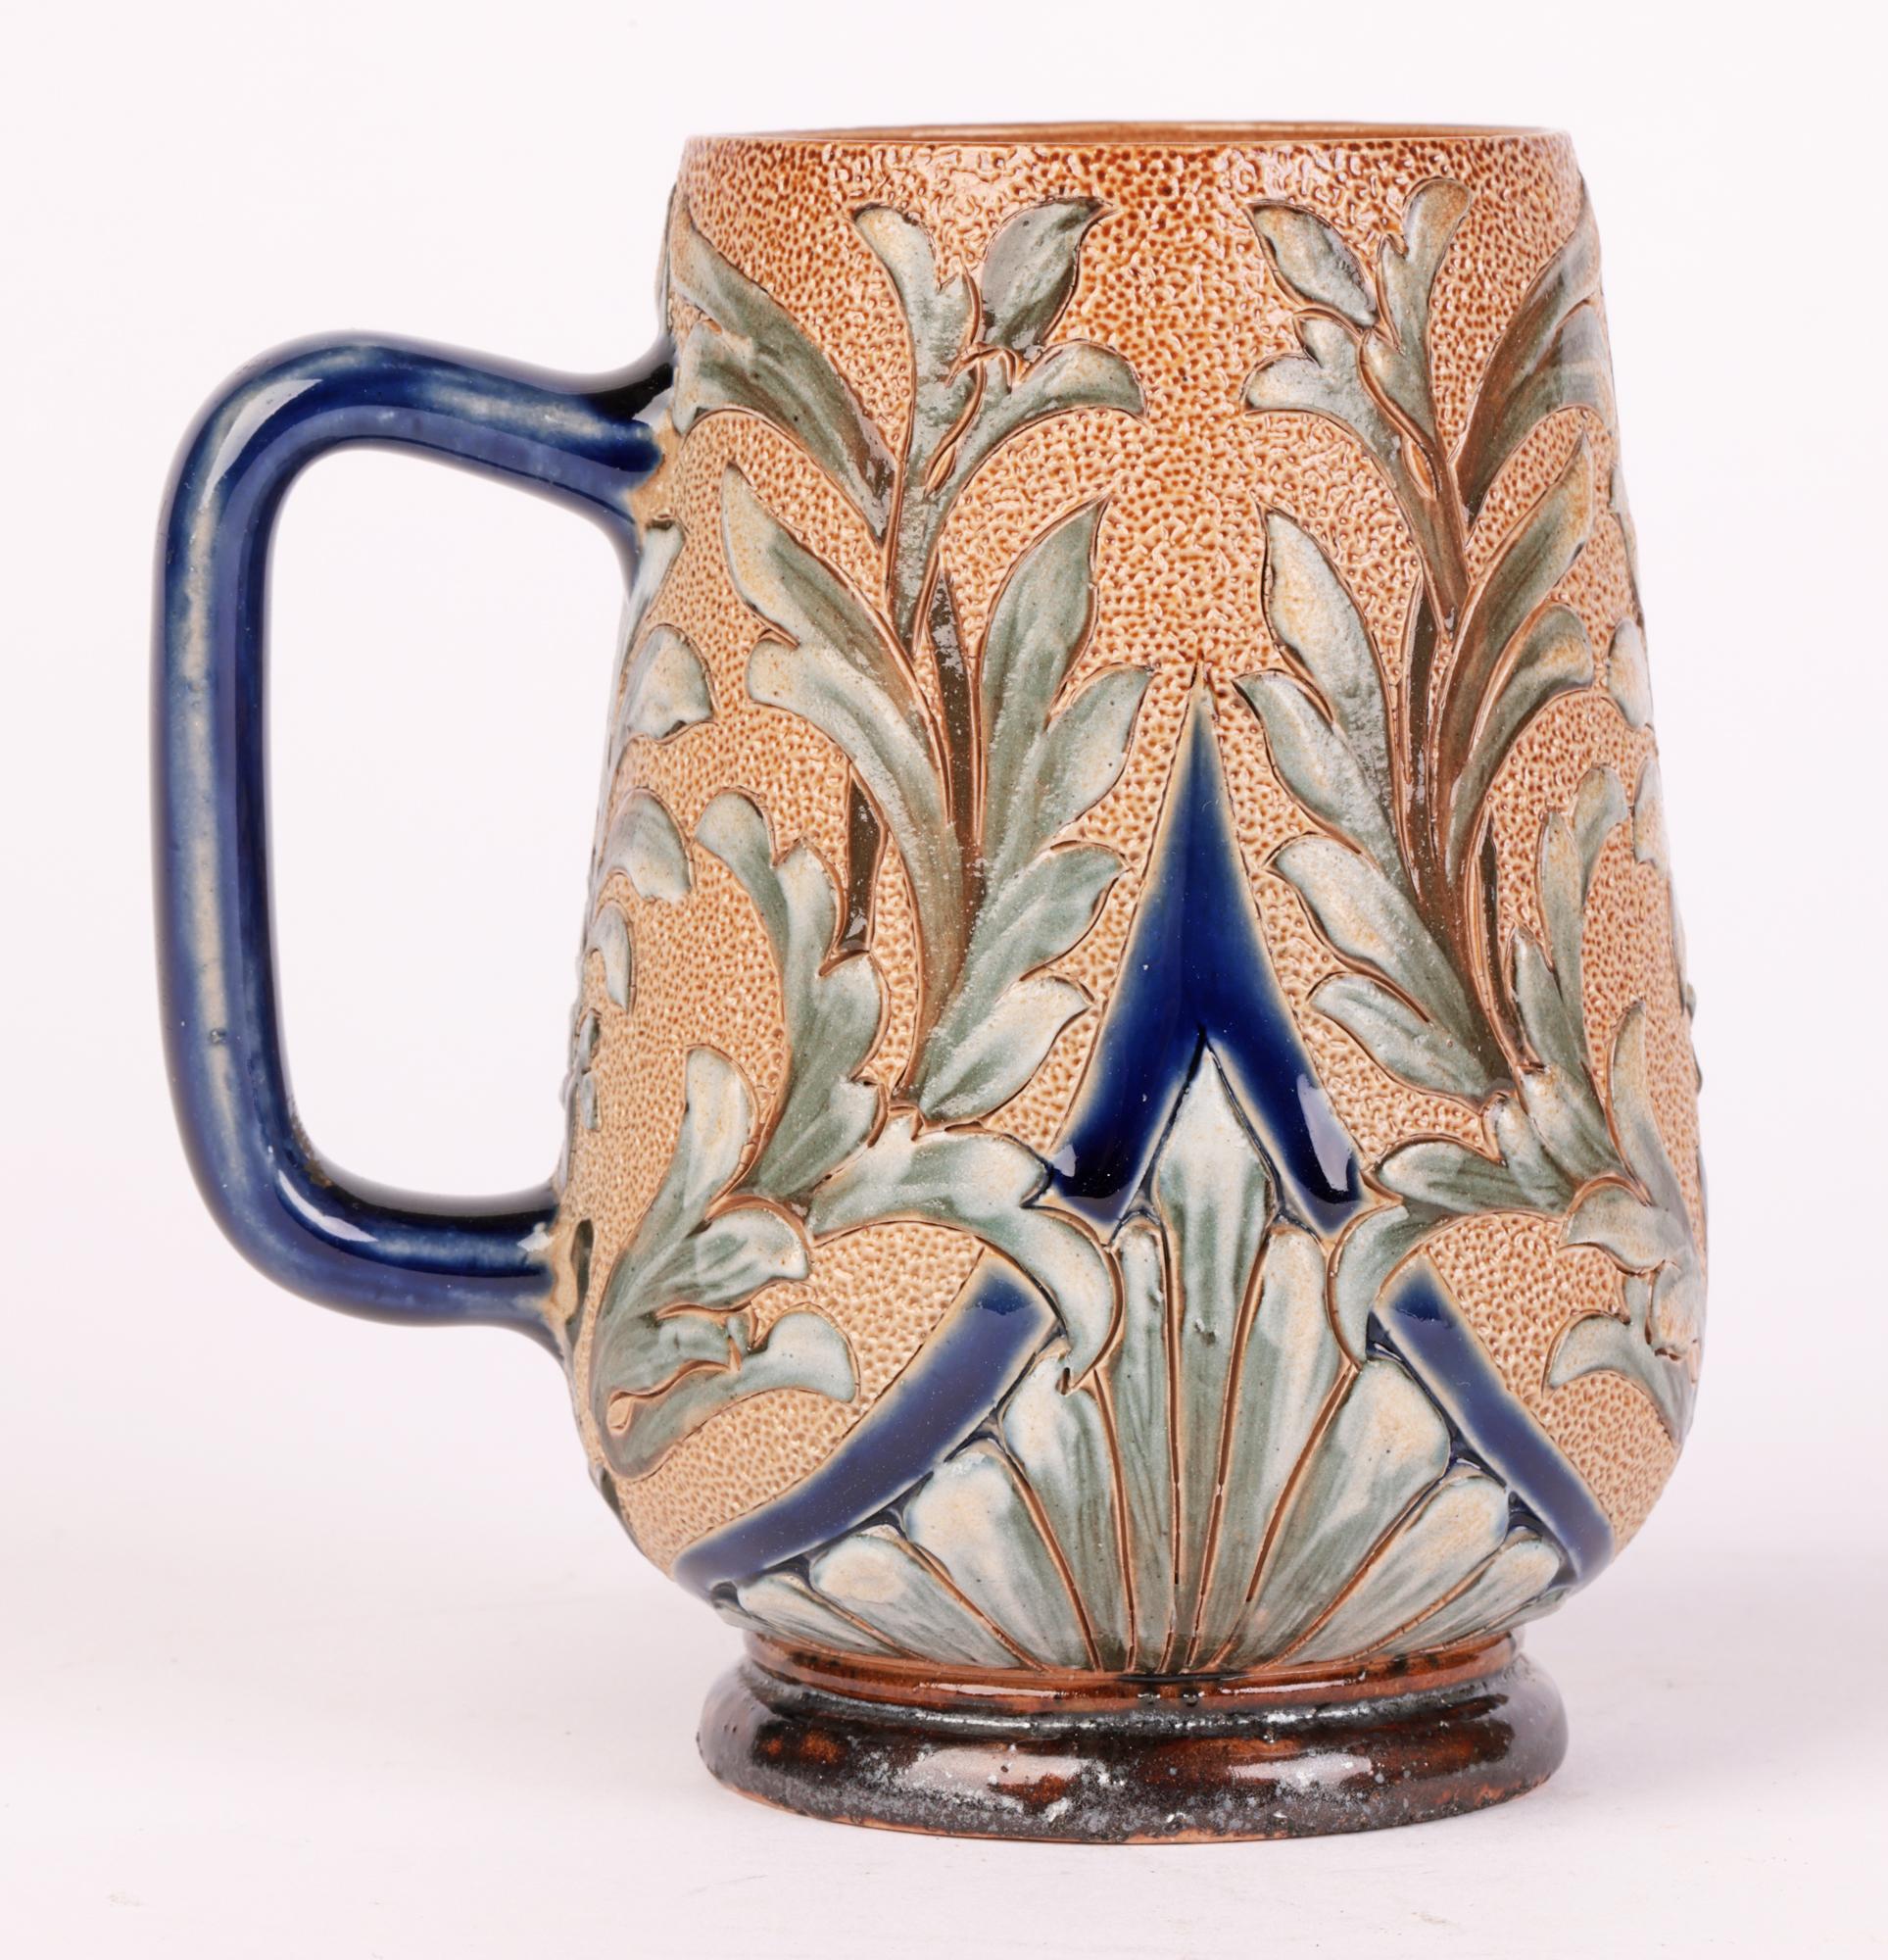 Glazed Doulton Lambeth Aesthetic Movement Slip Decorated Mug by Alice E Budden 1883